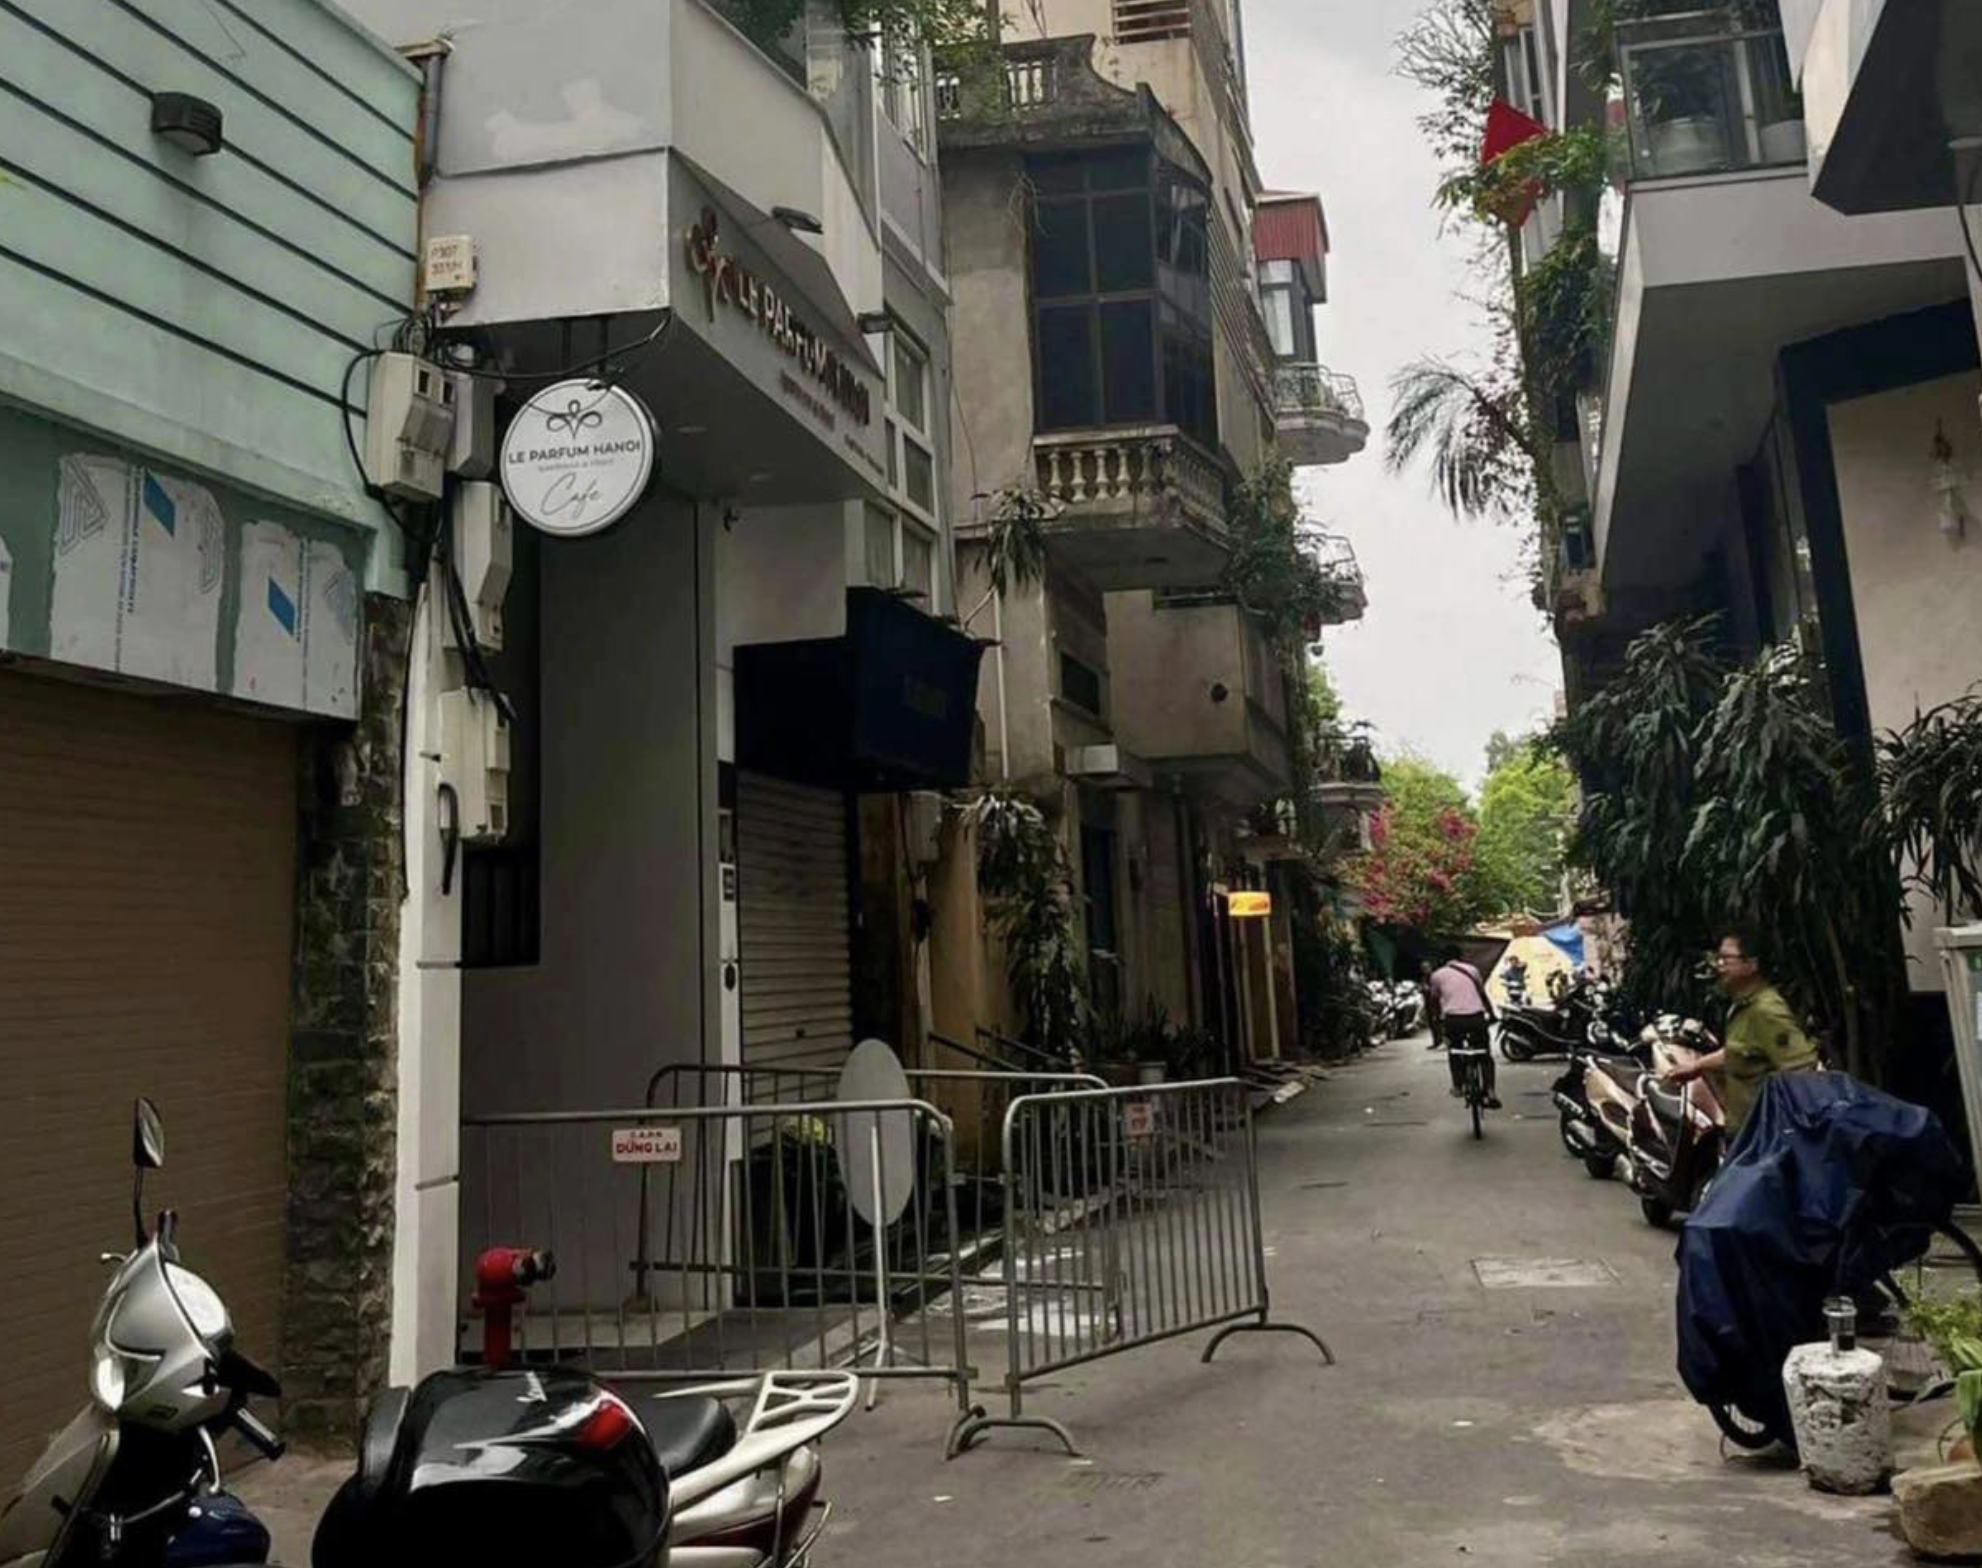 Căn nhà nơi xảy ra vụ việc nằm trong ngõ Tức Mạc, phường Cửa Nam, quận Hoàn Kiếm, Hà Nội